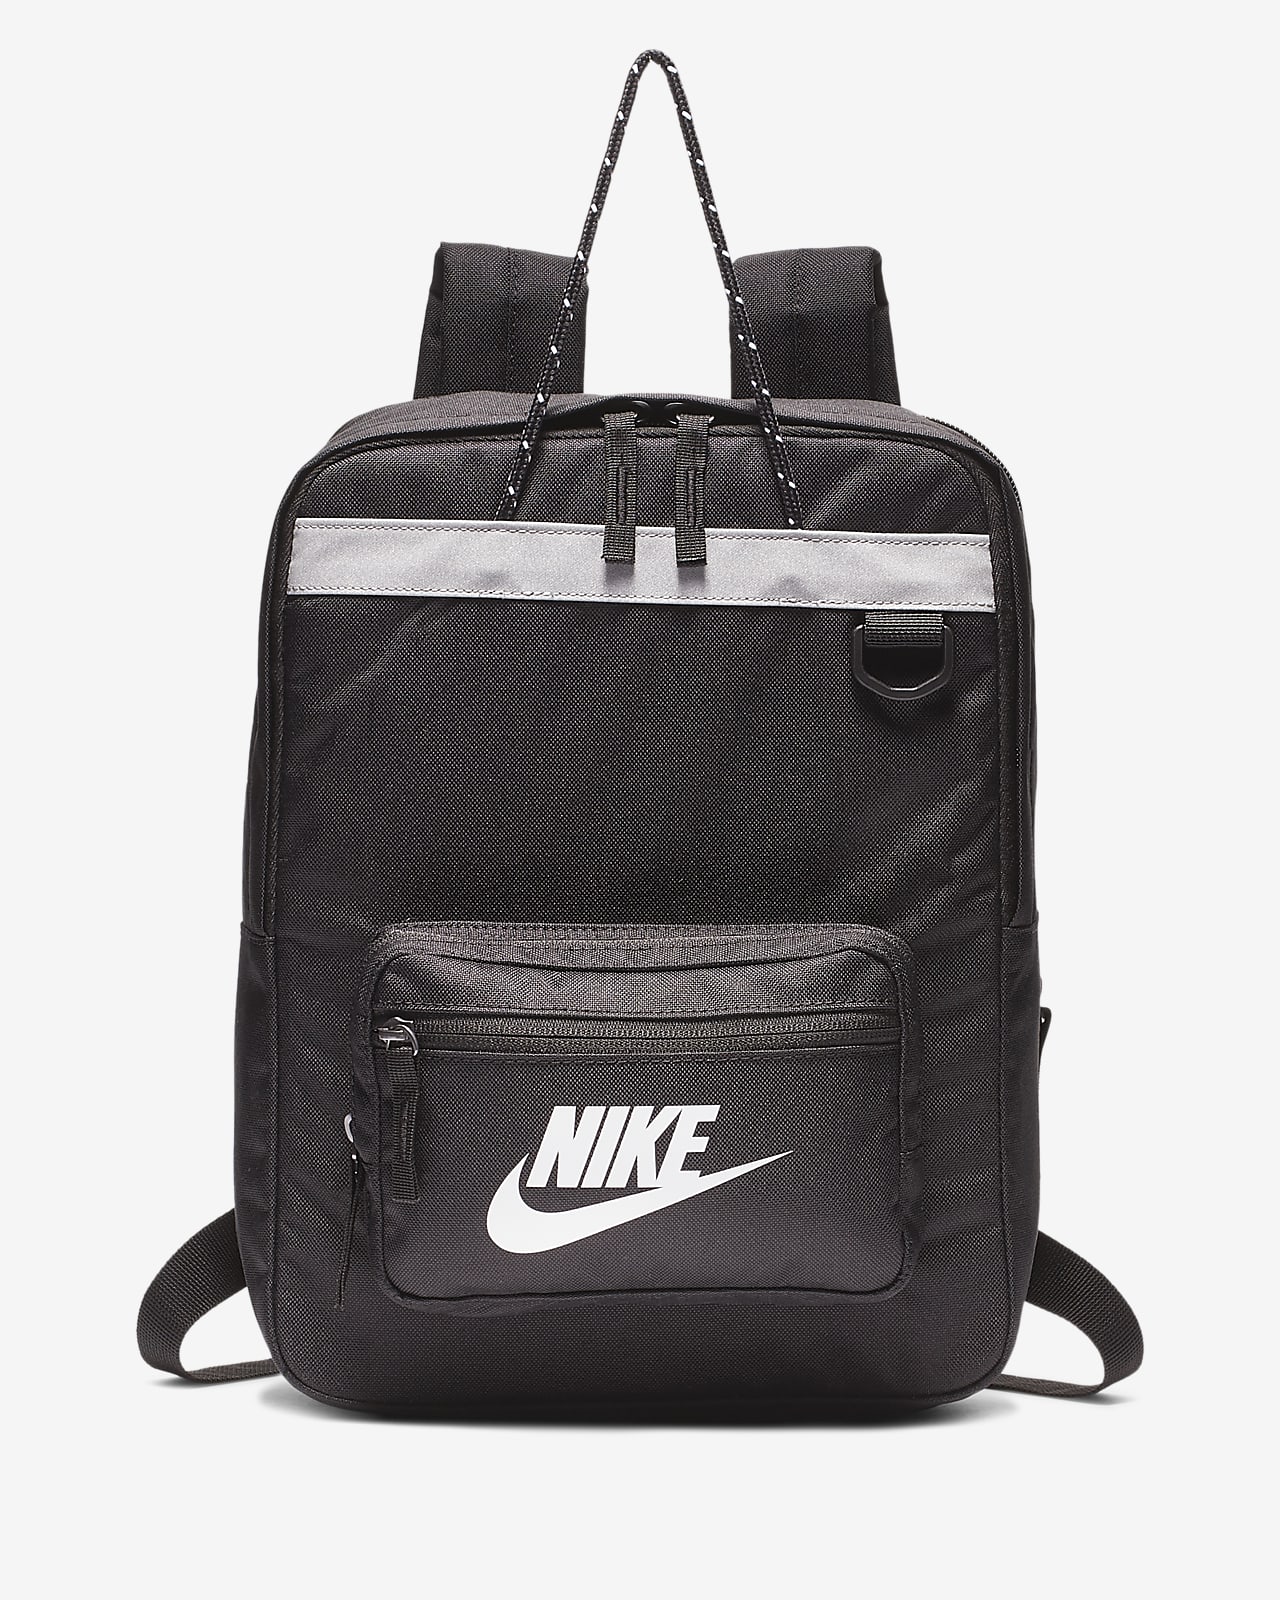 Nike Kids' Backpack. (11L).